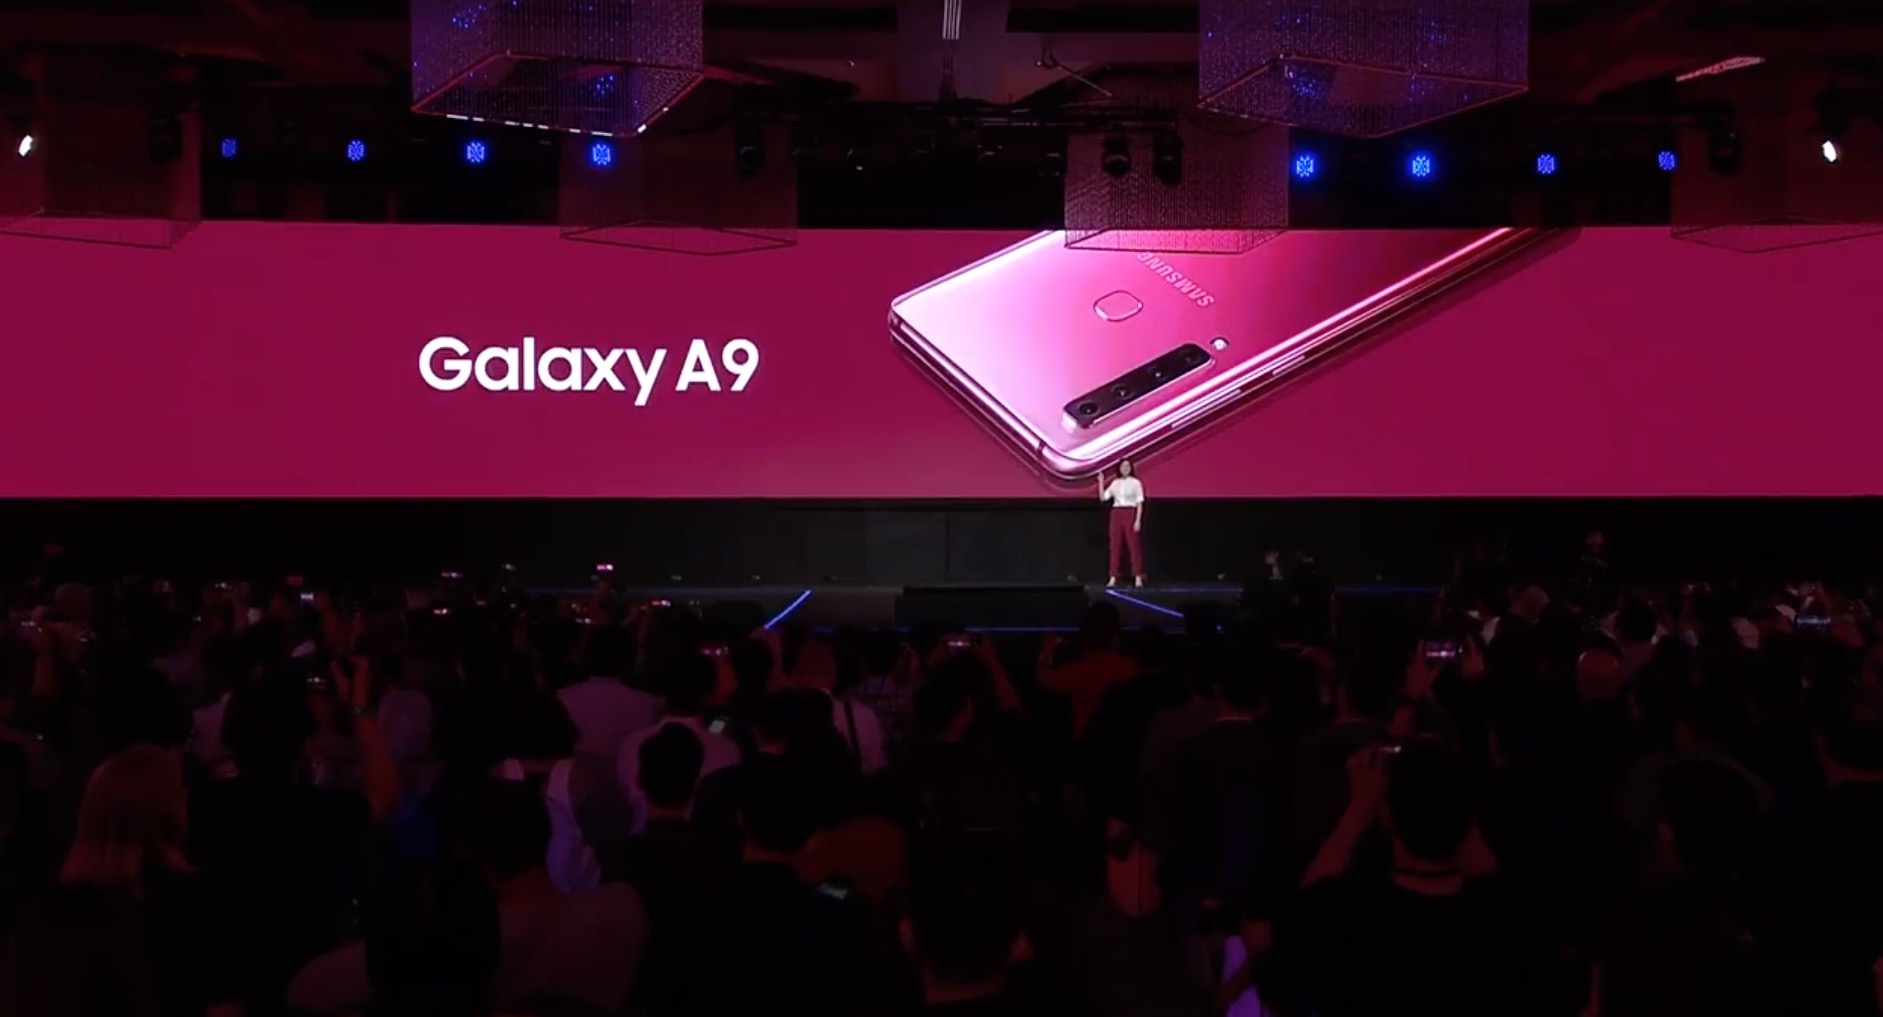 Samsung chính thức ra mắt Galaxy A9 (2018) với
4 camera sau, Snapdragon 660, 6/8GB RAM, pin 3800mAh